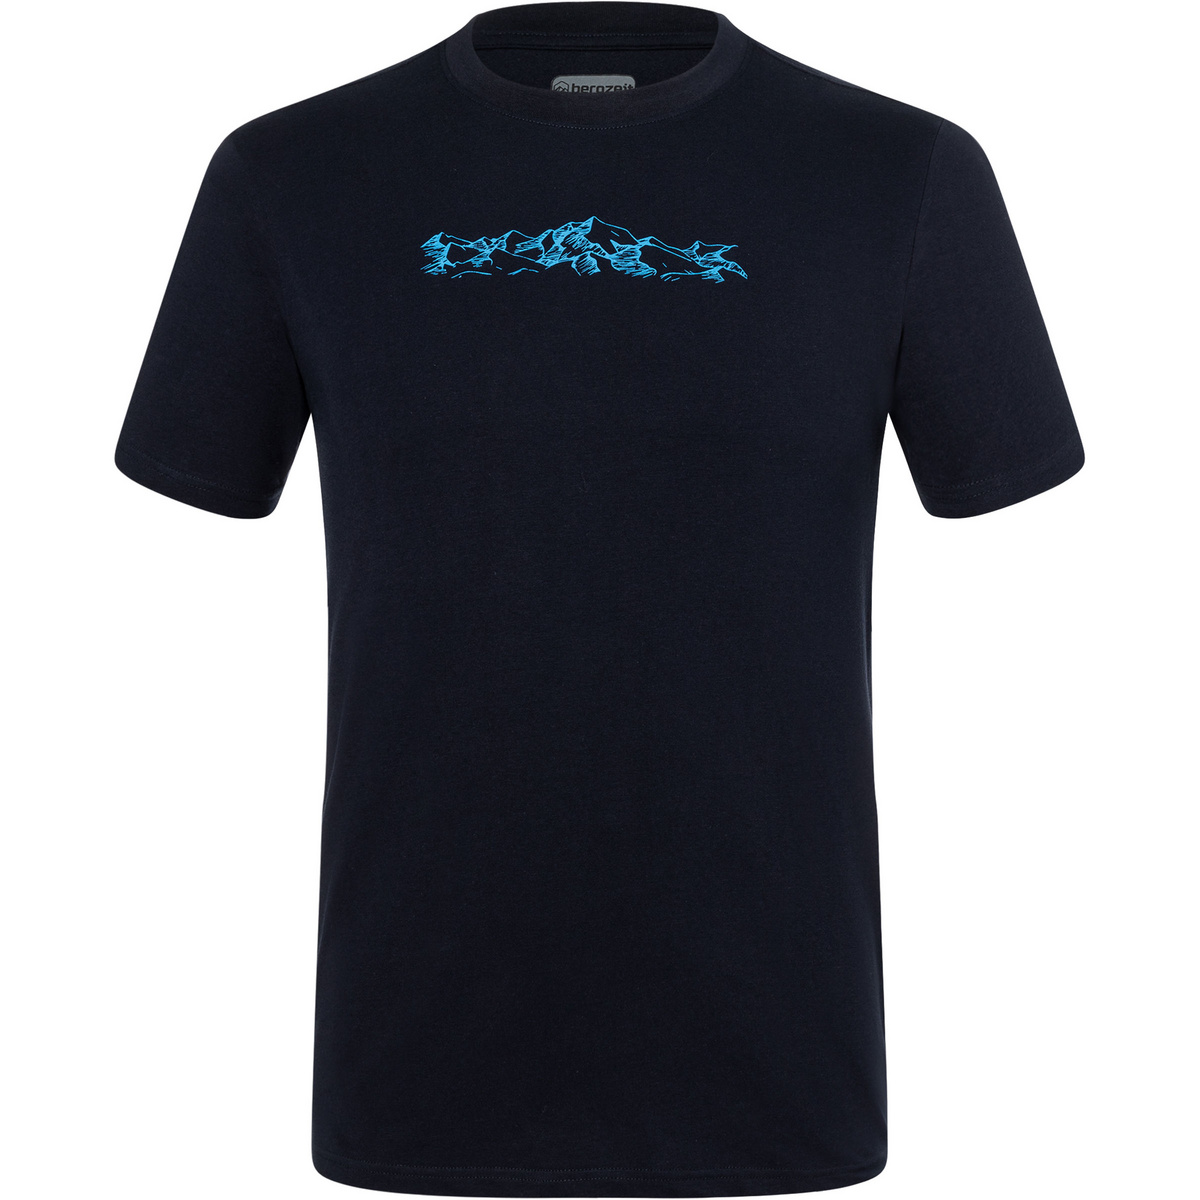 Bergzeit Basics Herren Bergzeit T-Shirt von Bergzeit Basics